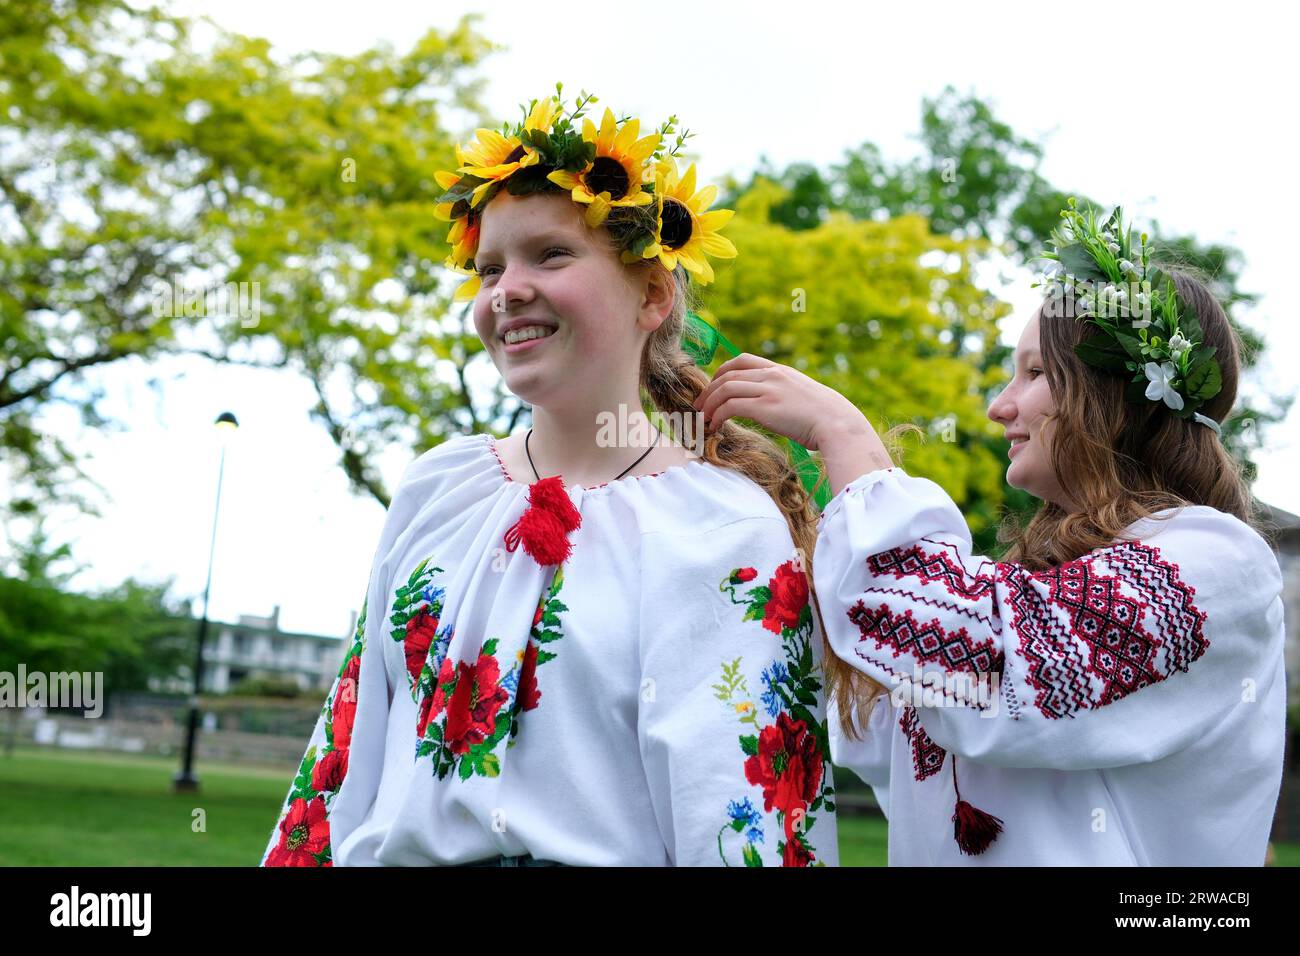 Kommunikation von zwei jungen schönen Mädchen in ukrainischen nationalen Kleidern, die geflochten geflochten sind, mit Kränzen in den Händen, die einen schönen Kranz auf den Kopf legen Sonnenblumen Waldblumen. Stickerei Stockfoto